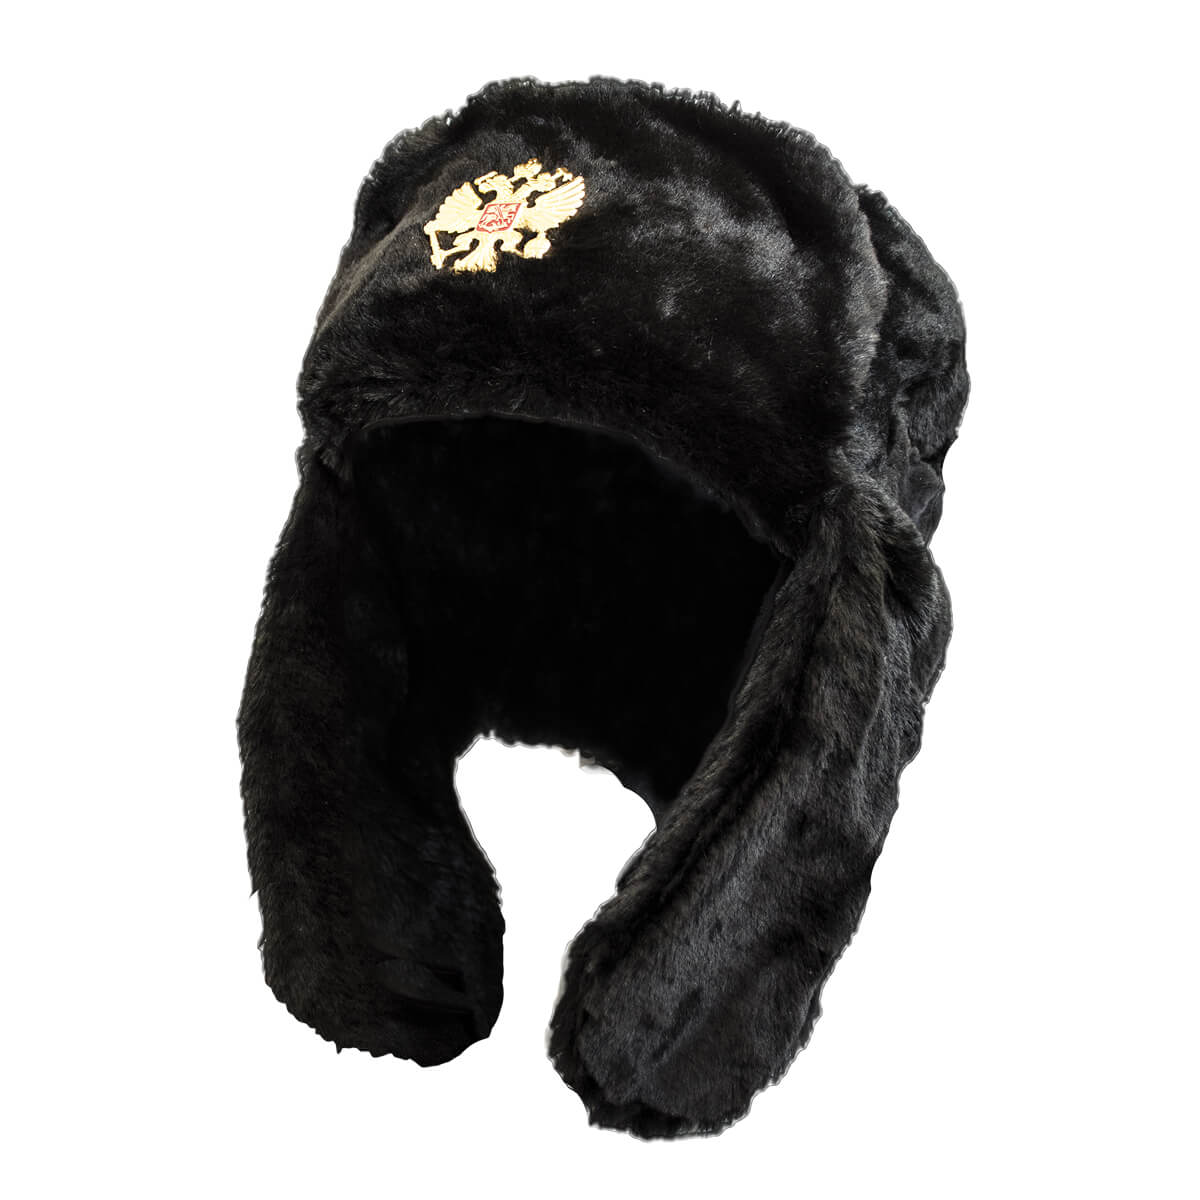 DOCILA Women Winter Warm Panda Style Bomber Hats Cute Pompom Fuzzy Trapper Caps Windproof Ushanka Russian Earflap Hat